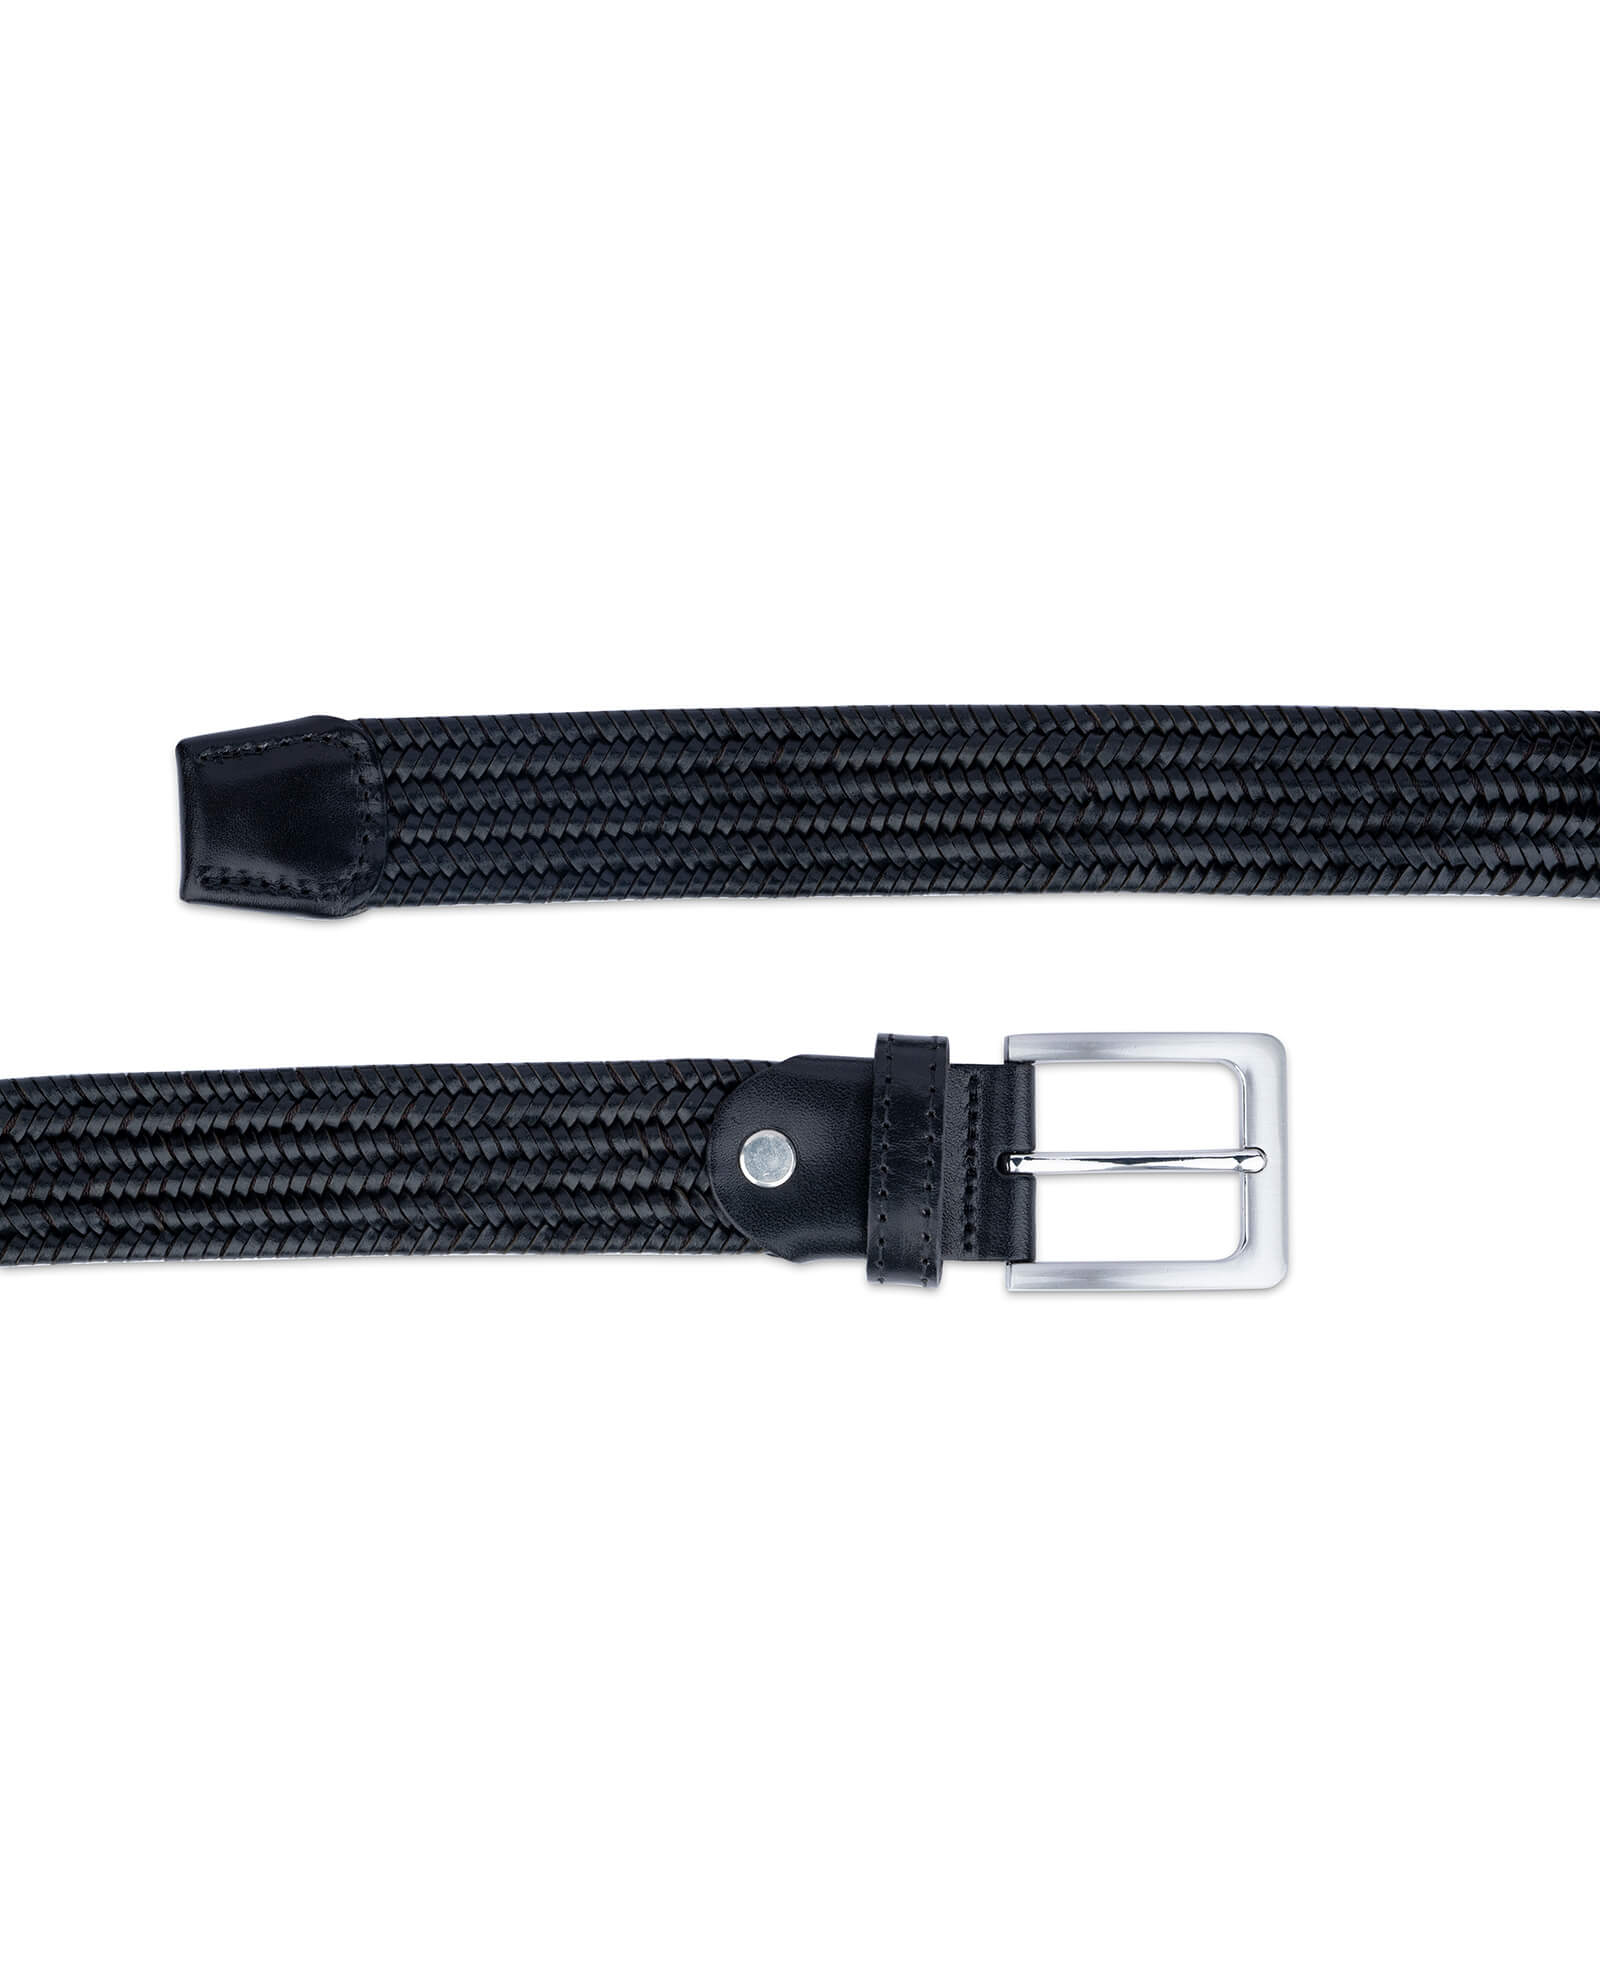 Buy Black Braided Leather Stretch Belt For Men | LeatherBeltsOnline.com